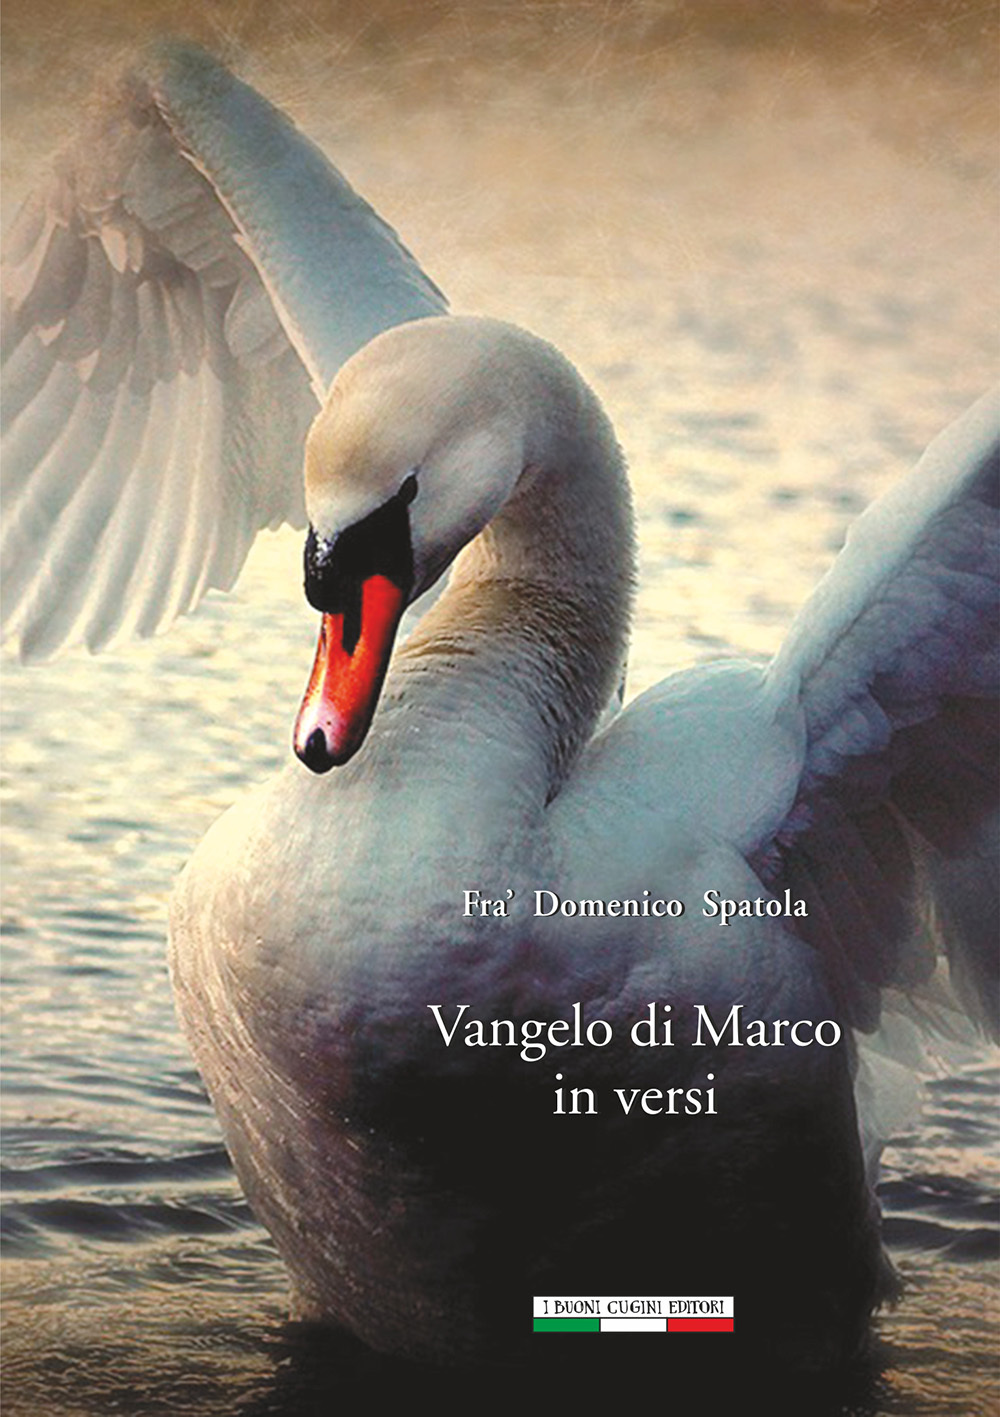 Fra' Domenico Spatola: Vangelo di Marco in Versi